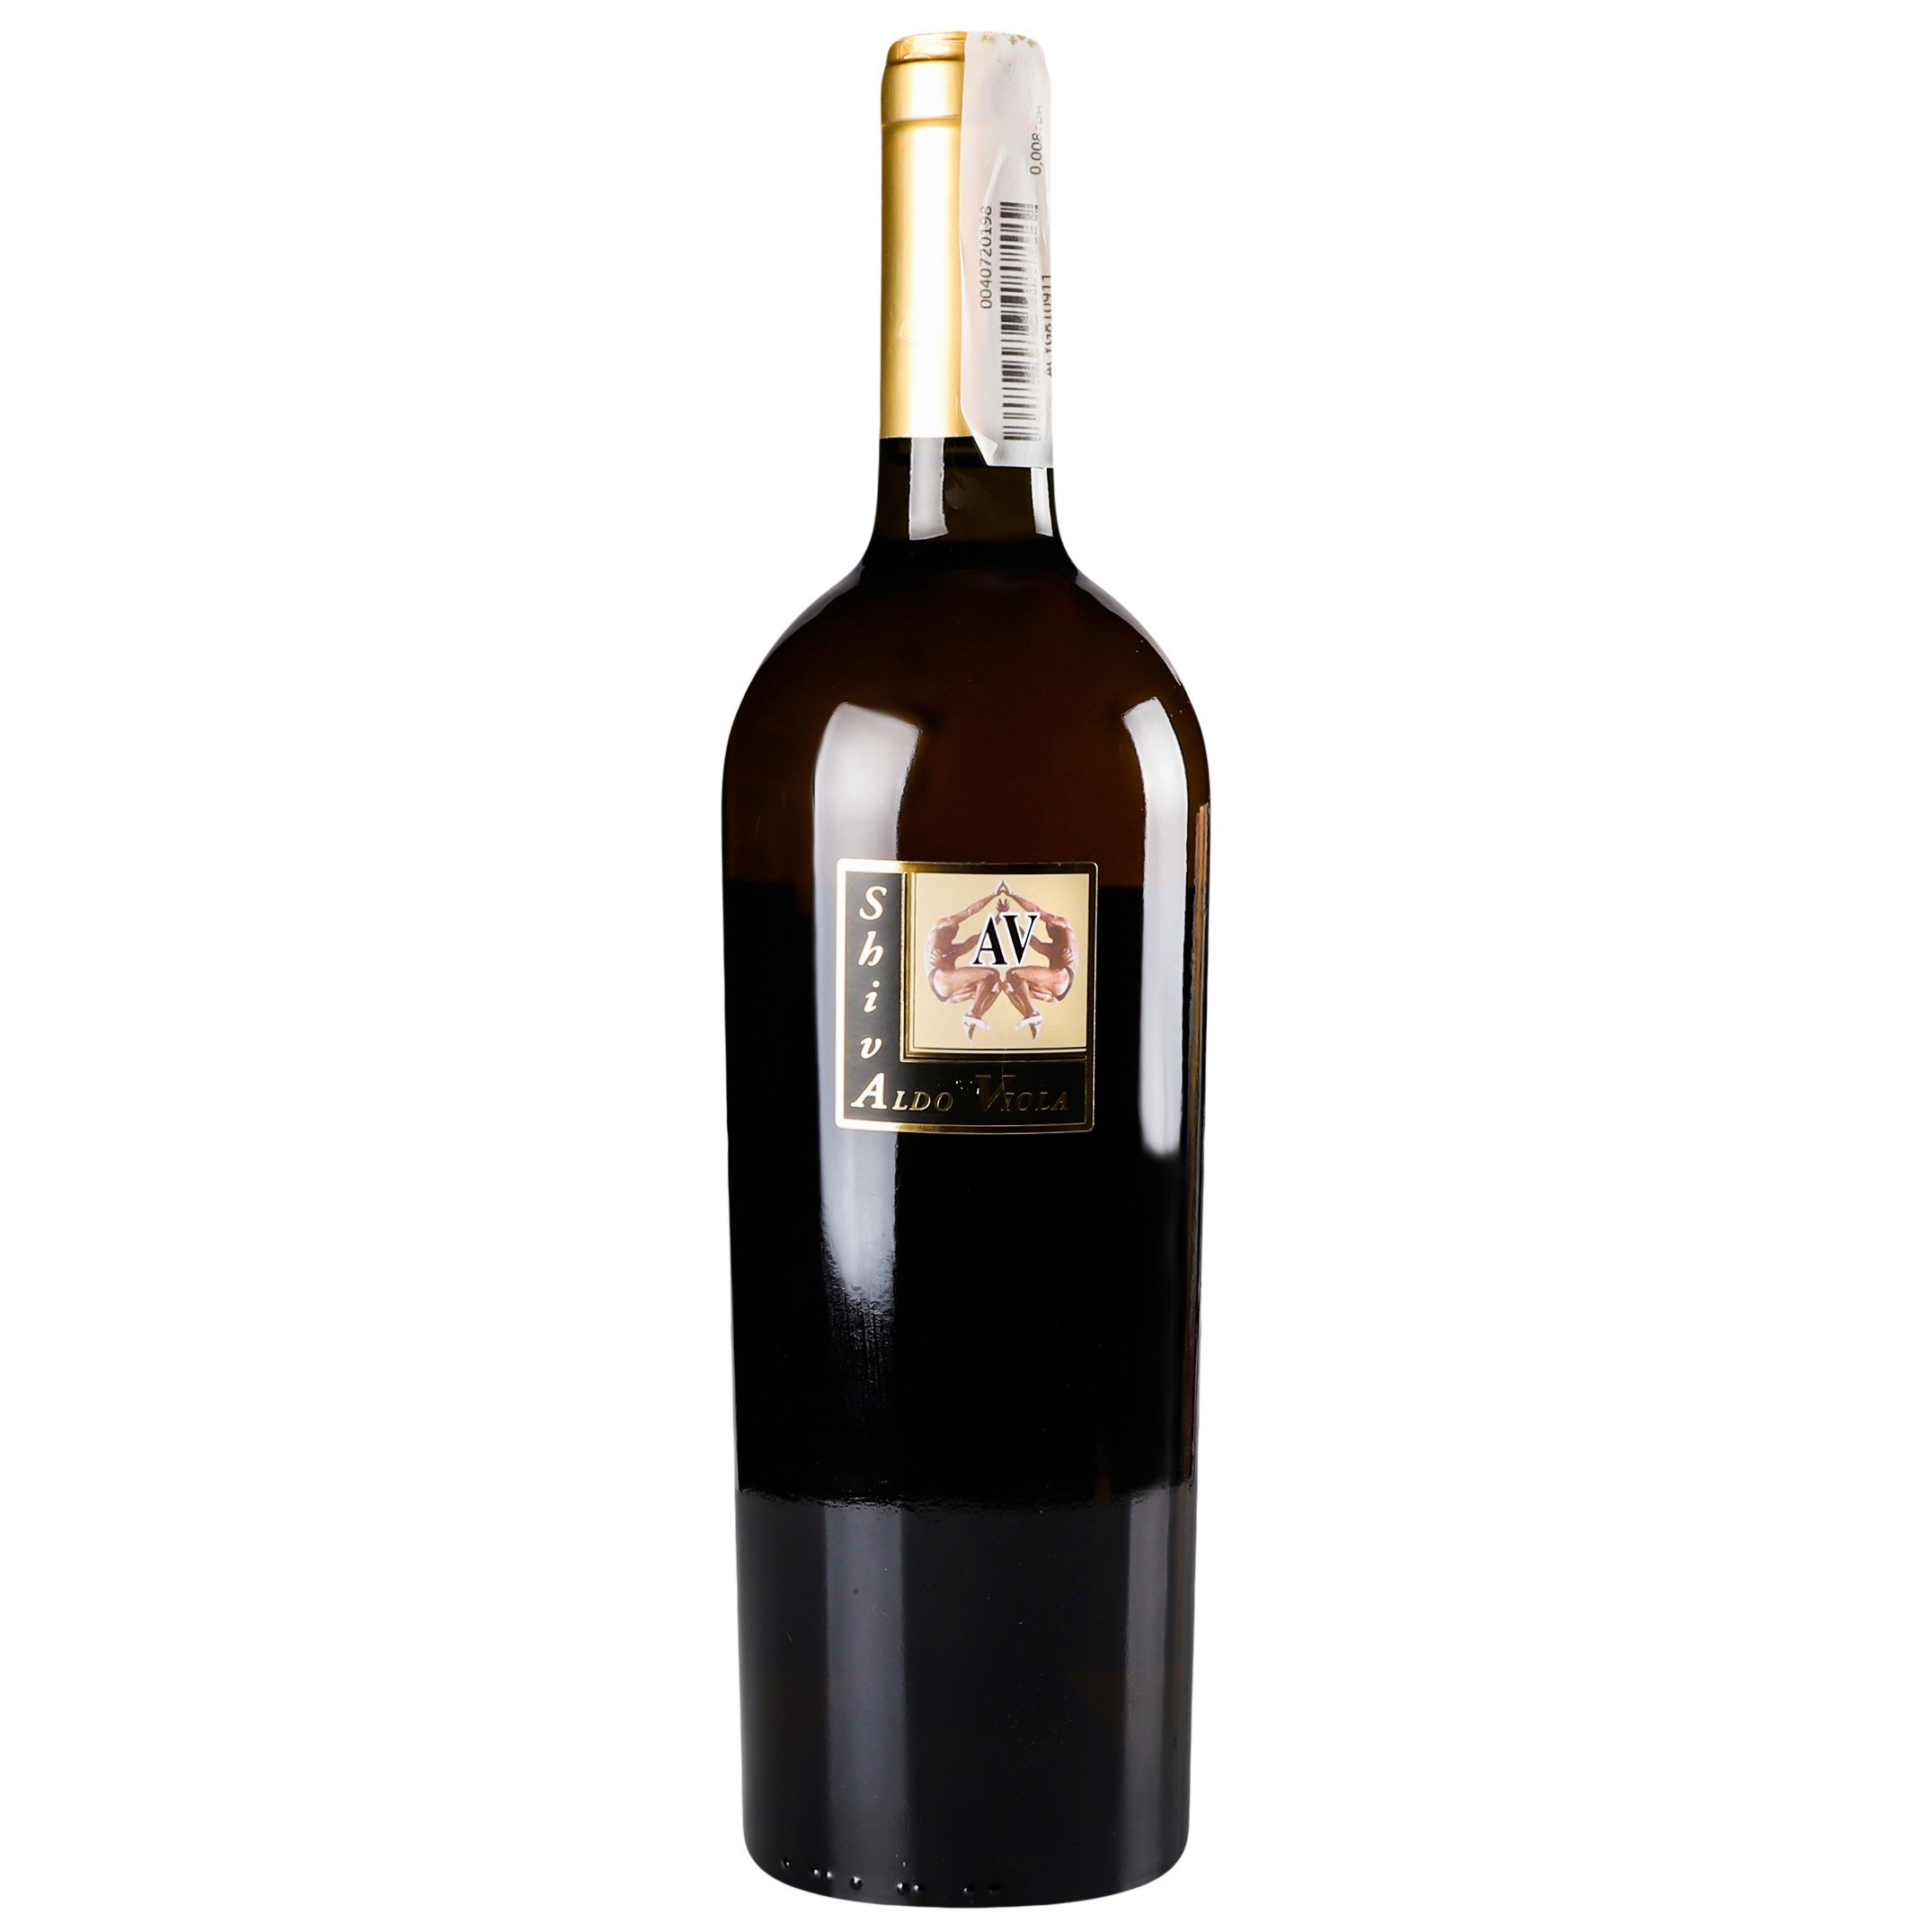 Вино Aldo Viola Shiva bianco 2017 IGT, 13%, 0,75 л (890043) - фото 1